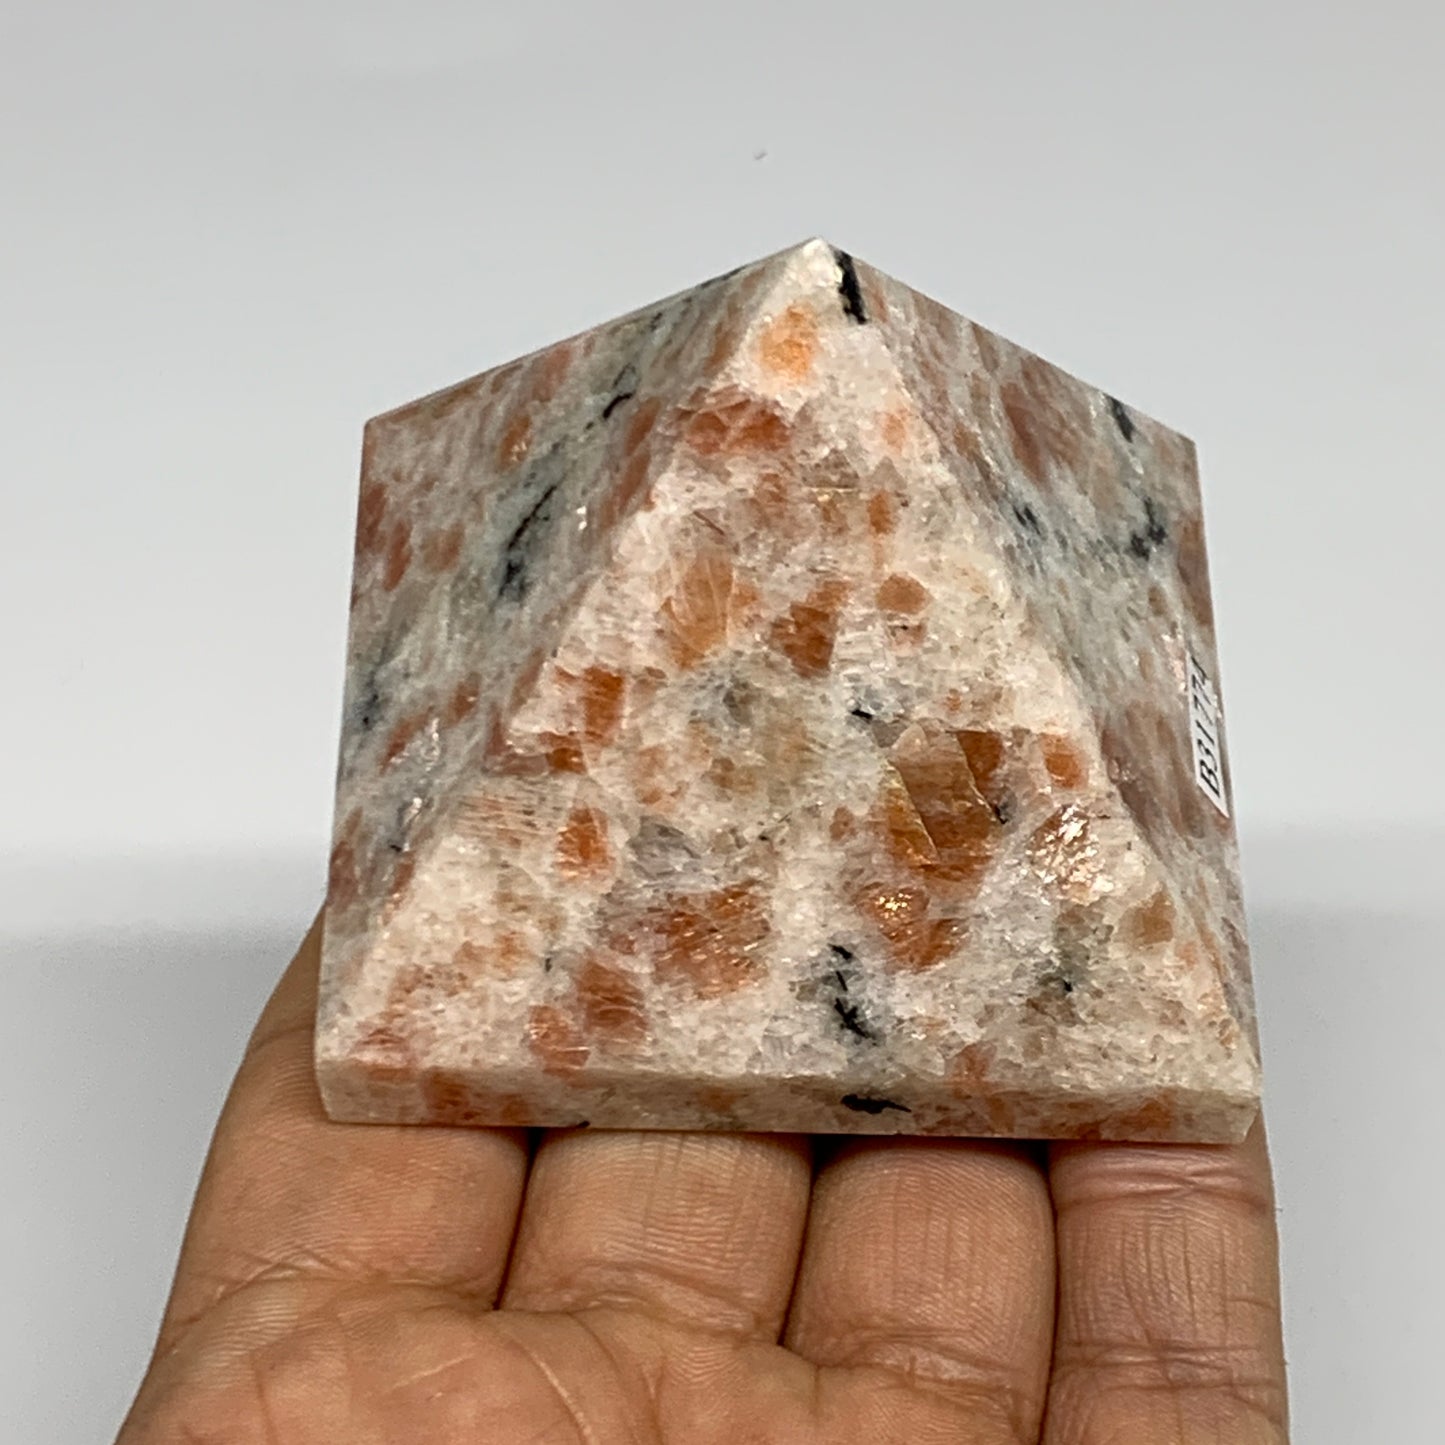 0.49 lbs, 2"x2.4"x2.4", Sunstone Pyramid Gemstone, Polished Gemstone, B31774